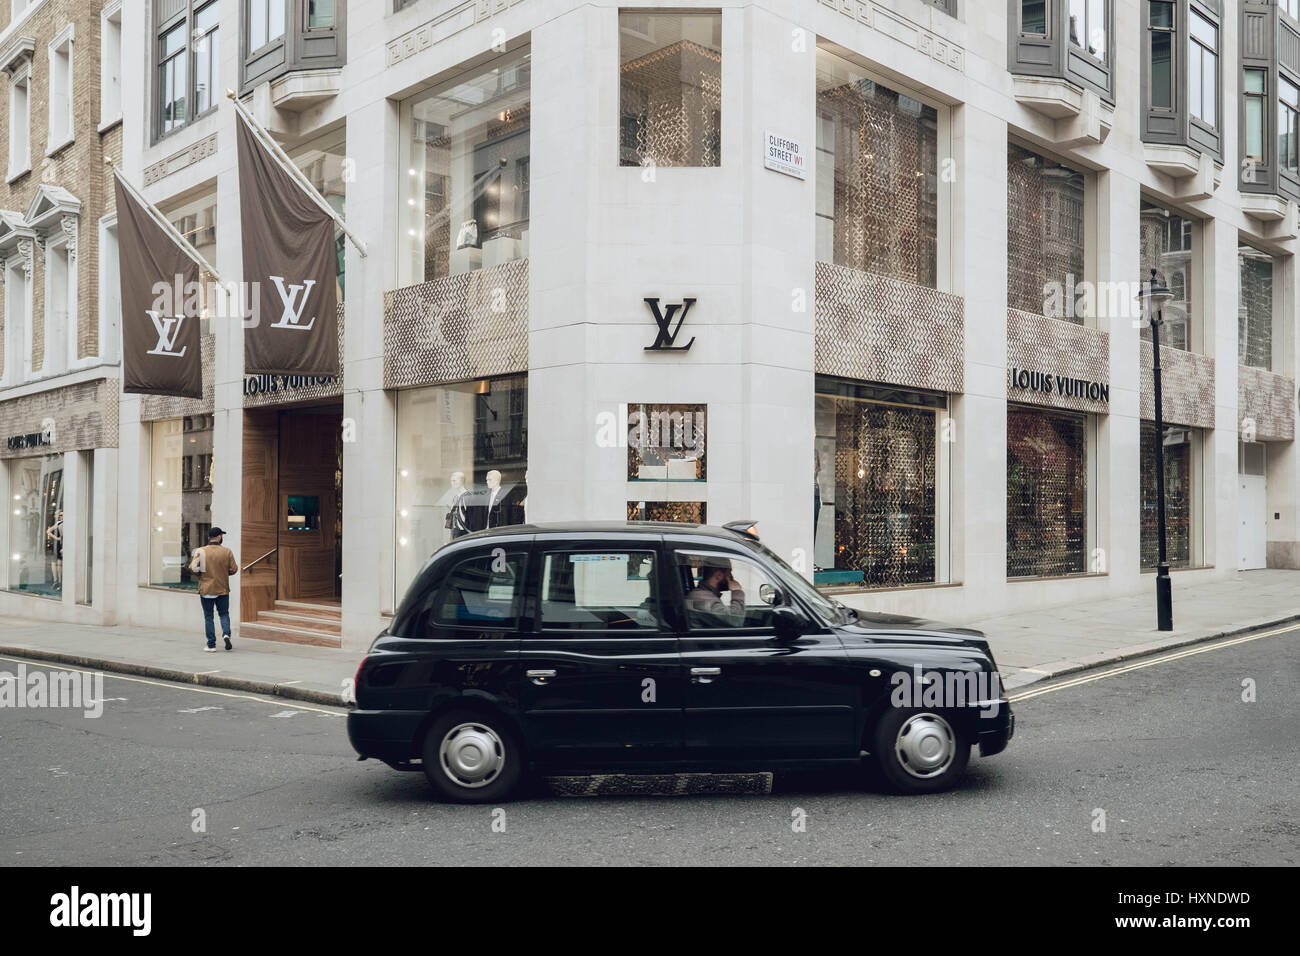 Transports : un noir London cab / taxi drives passé la Louis Vuitton Shop à Bond Street. Banque D'Images